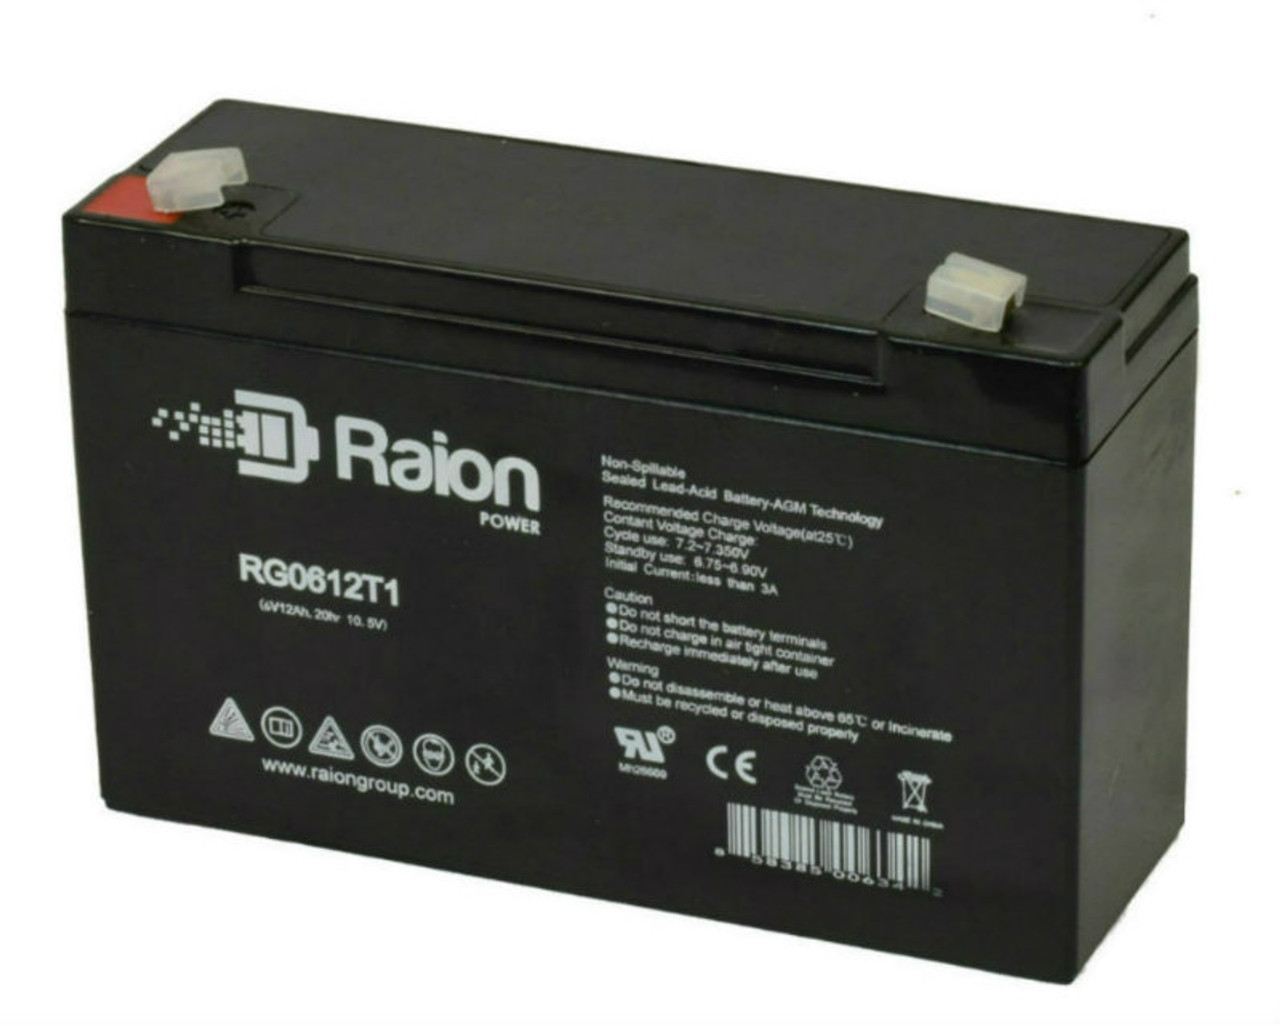 Raion Power RG06120T1 Replacement 6V 12Ah Emergency Light Battery for Emergi-Lite 12-DSM-54